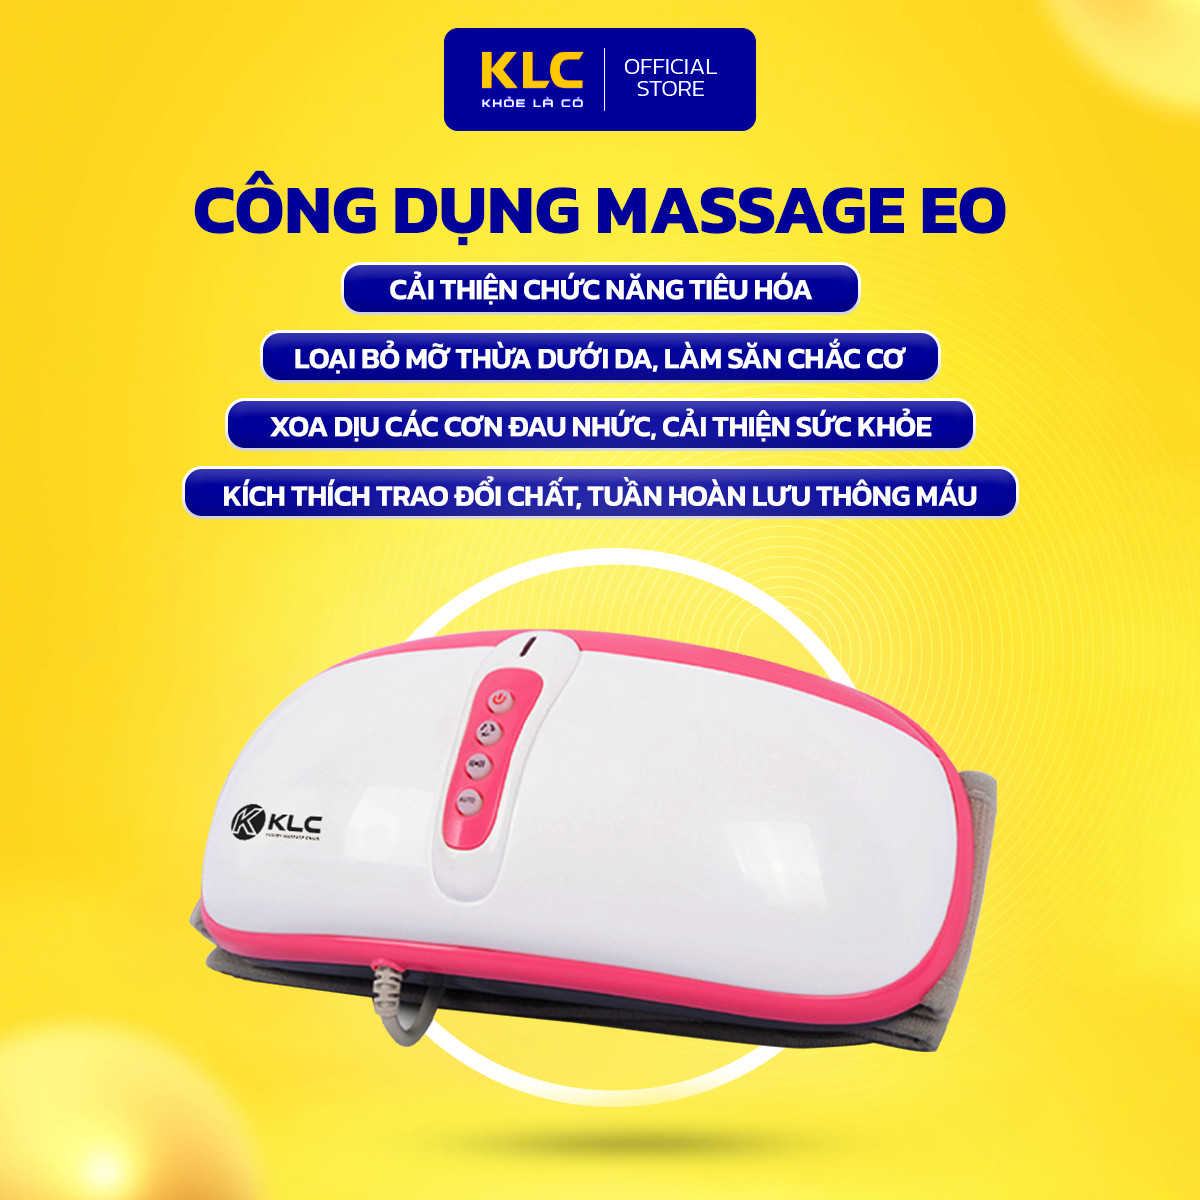 Máy Massage Bụng KLC, công nghệ nhiệt hồng ngoại, đánh tan mỡ hiệu quả, an toàn, mang lại vòng eo thon gọn